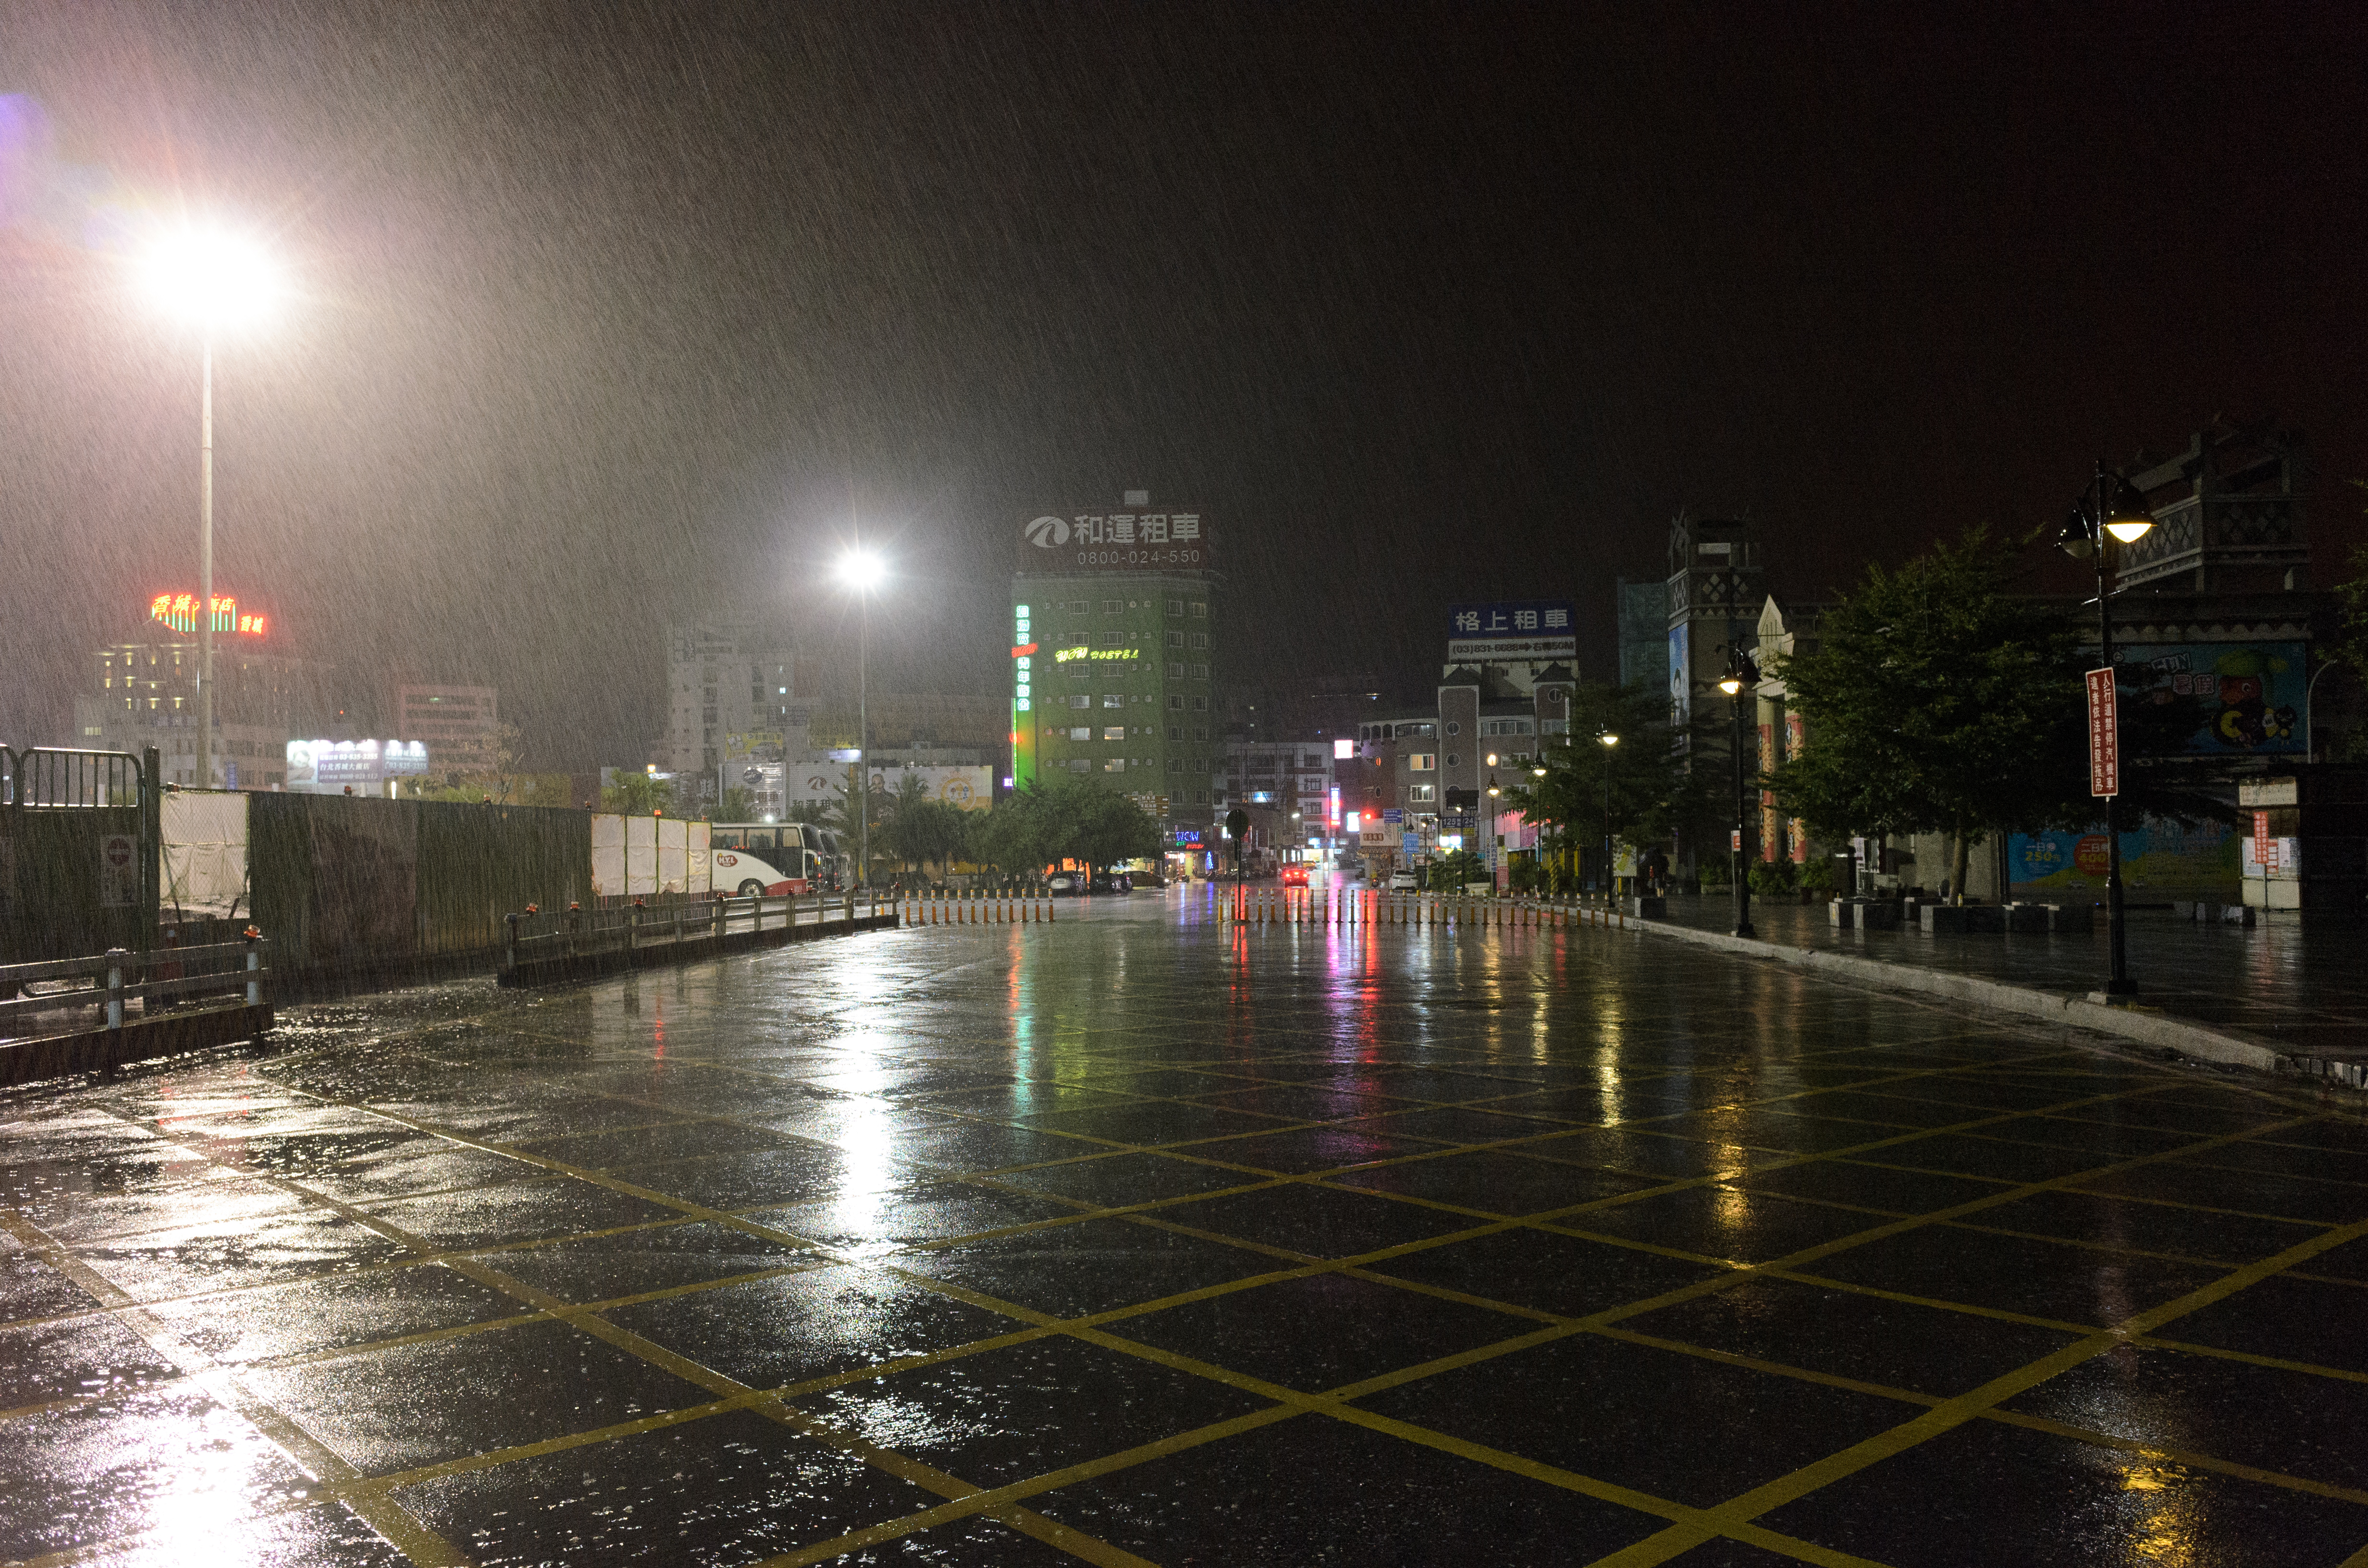 rainy night in the city